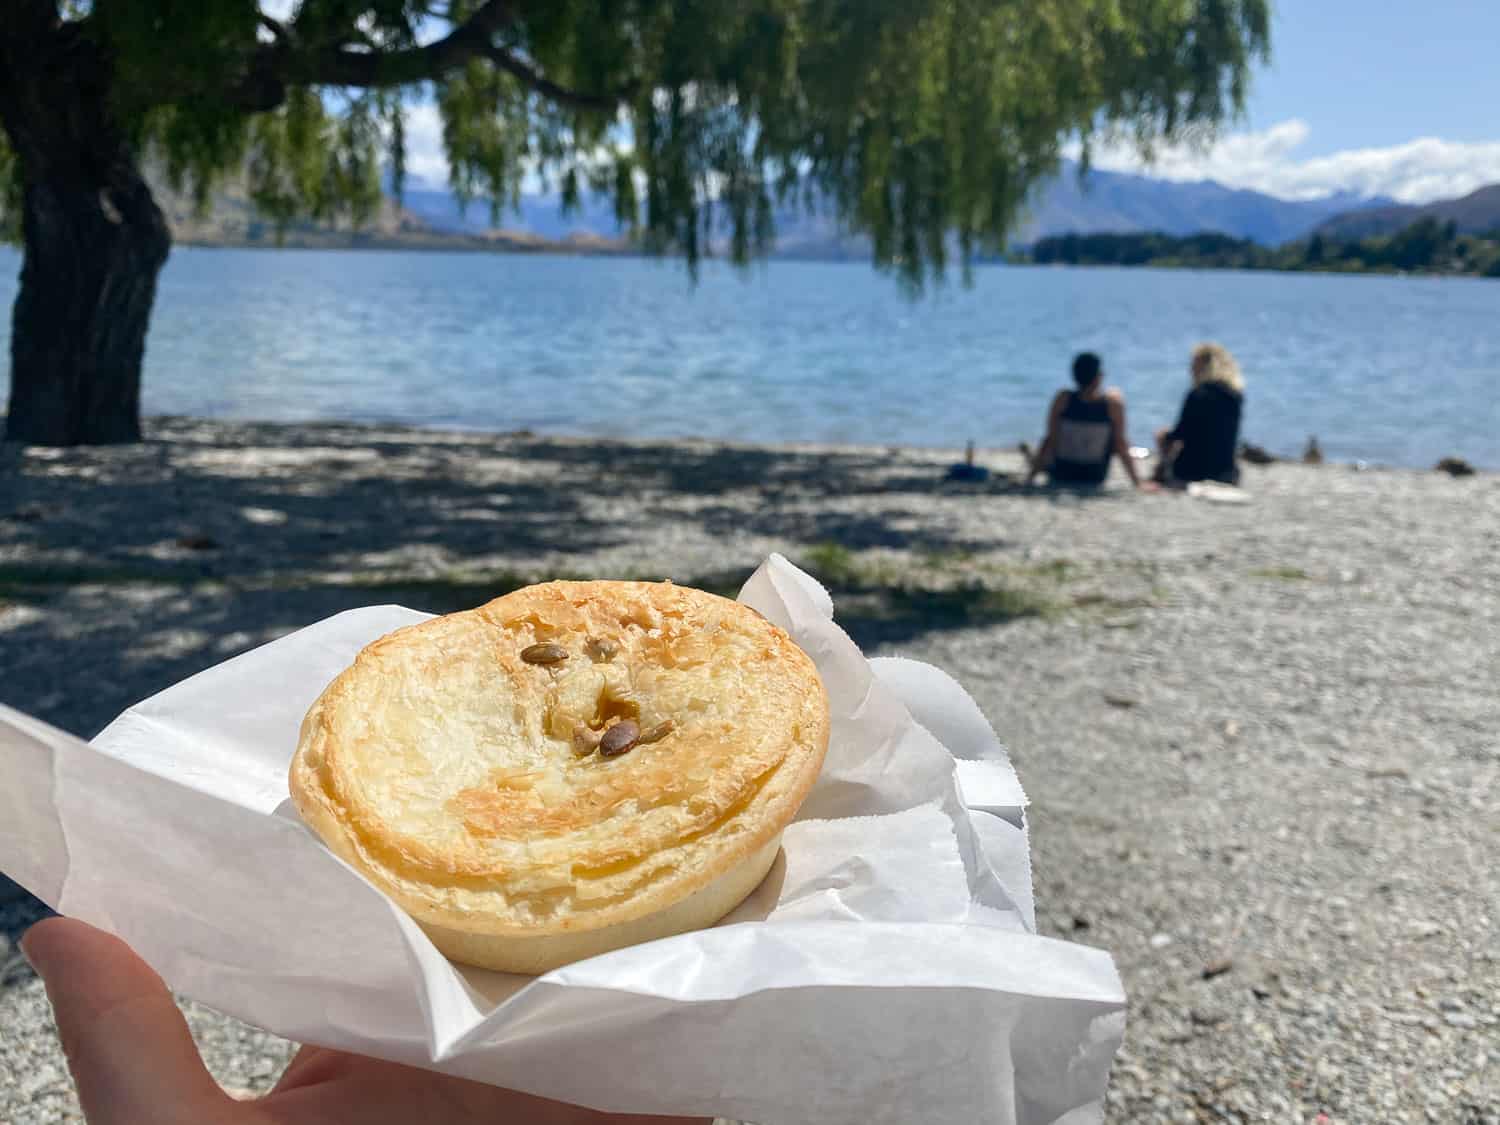 Pie from Doughbin Bakery at Lake Wanaka, New Zealand